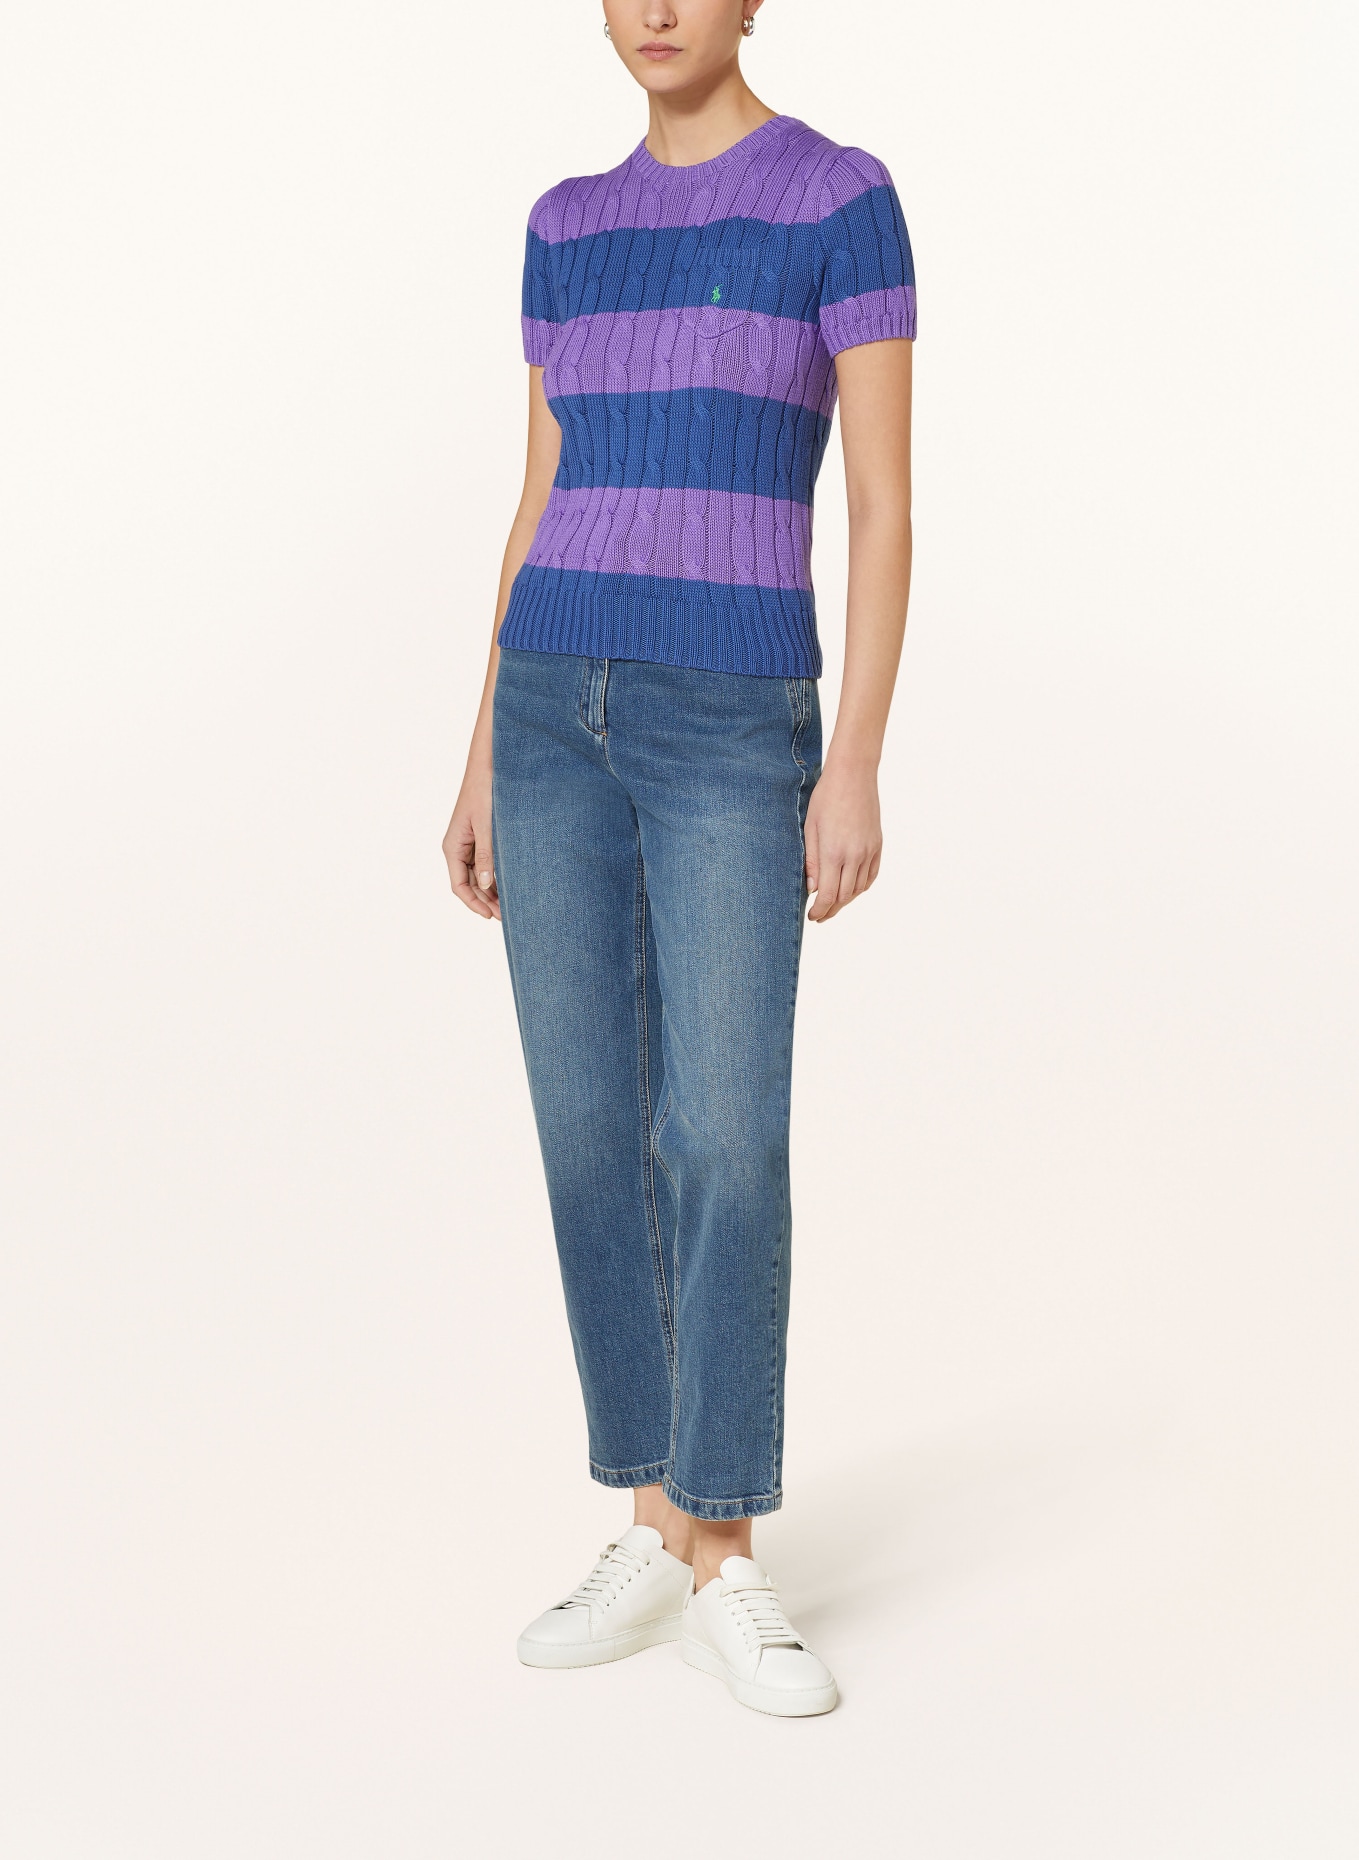 POLO RALPH LAUREN Knit shirt, Color: PURPLE/ DARK BLUE (Image 2)